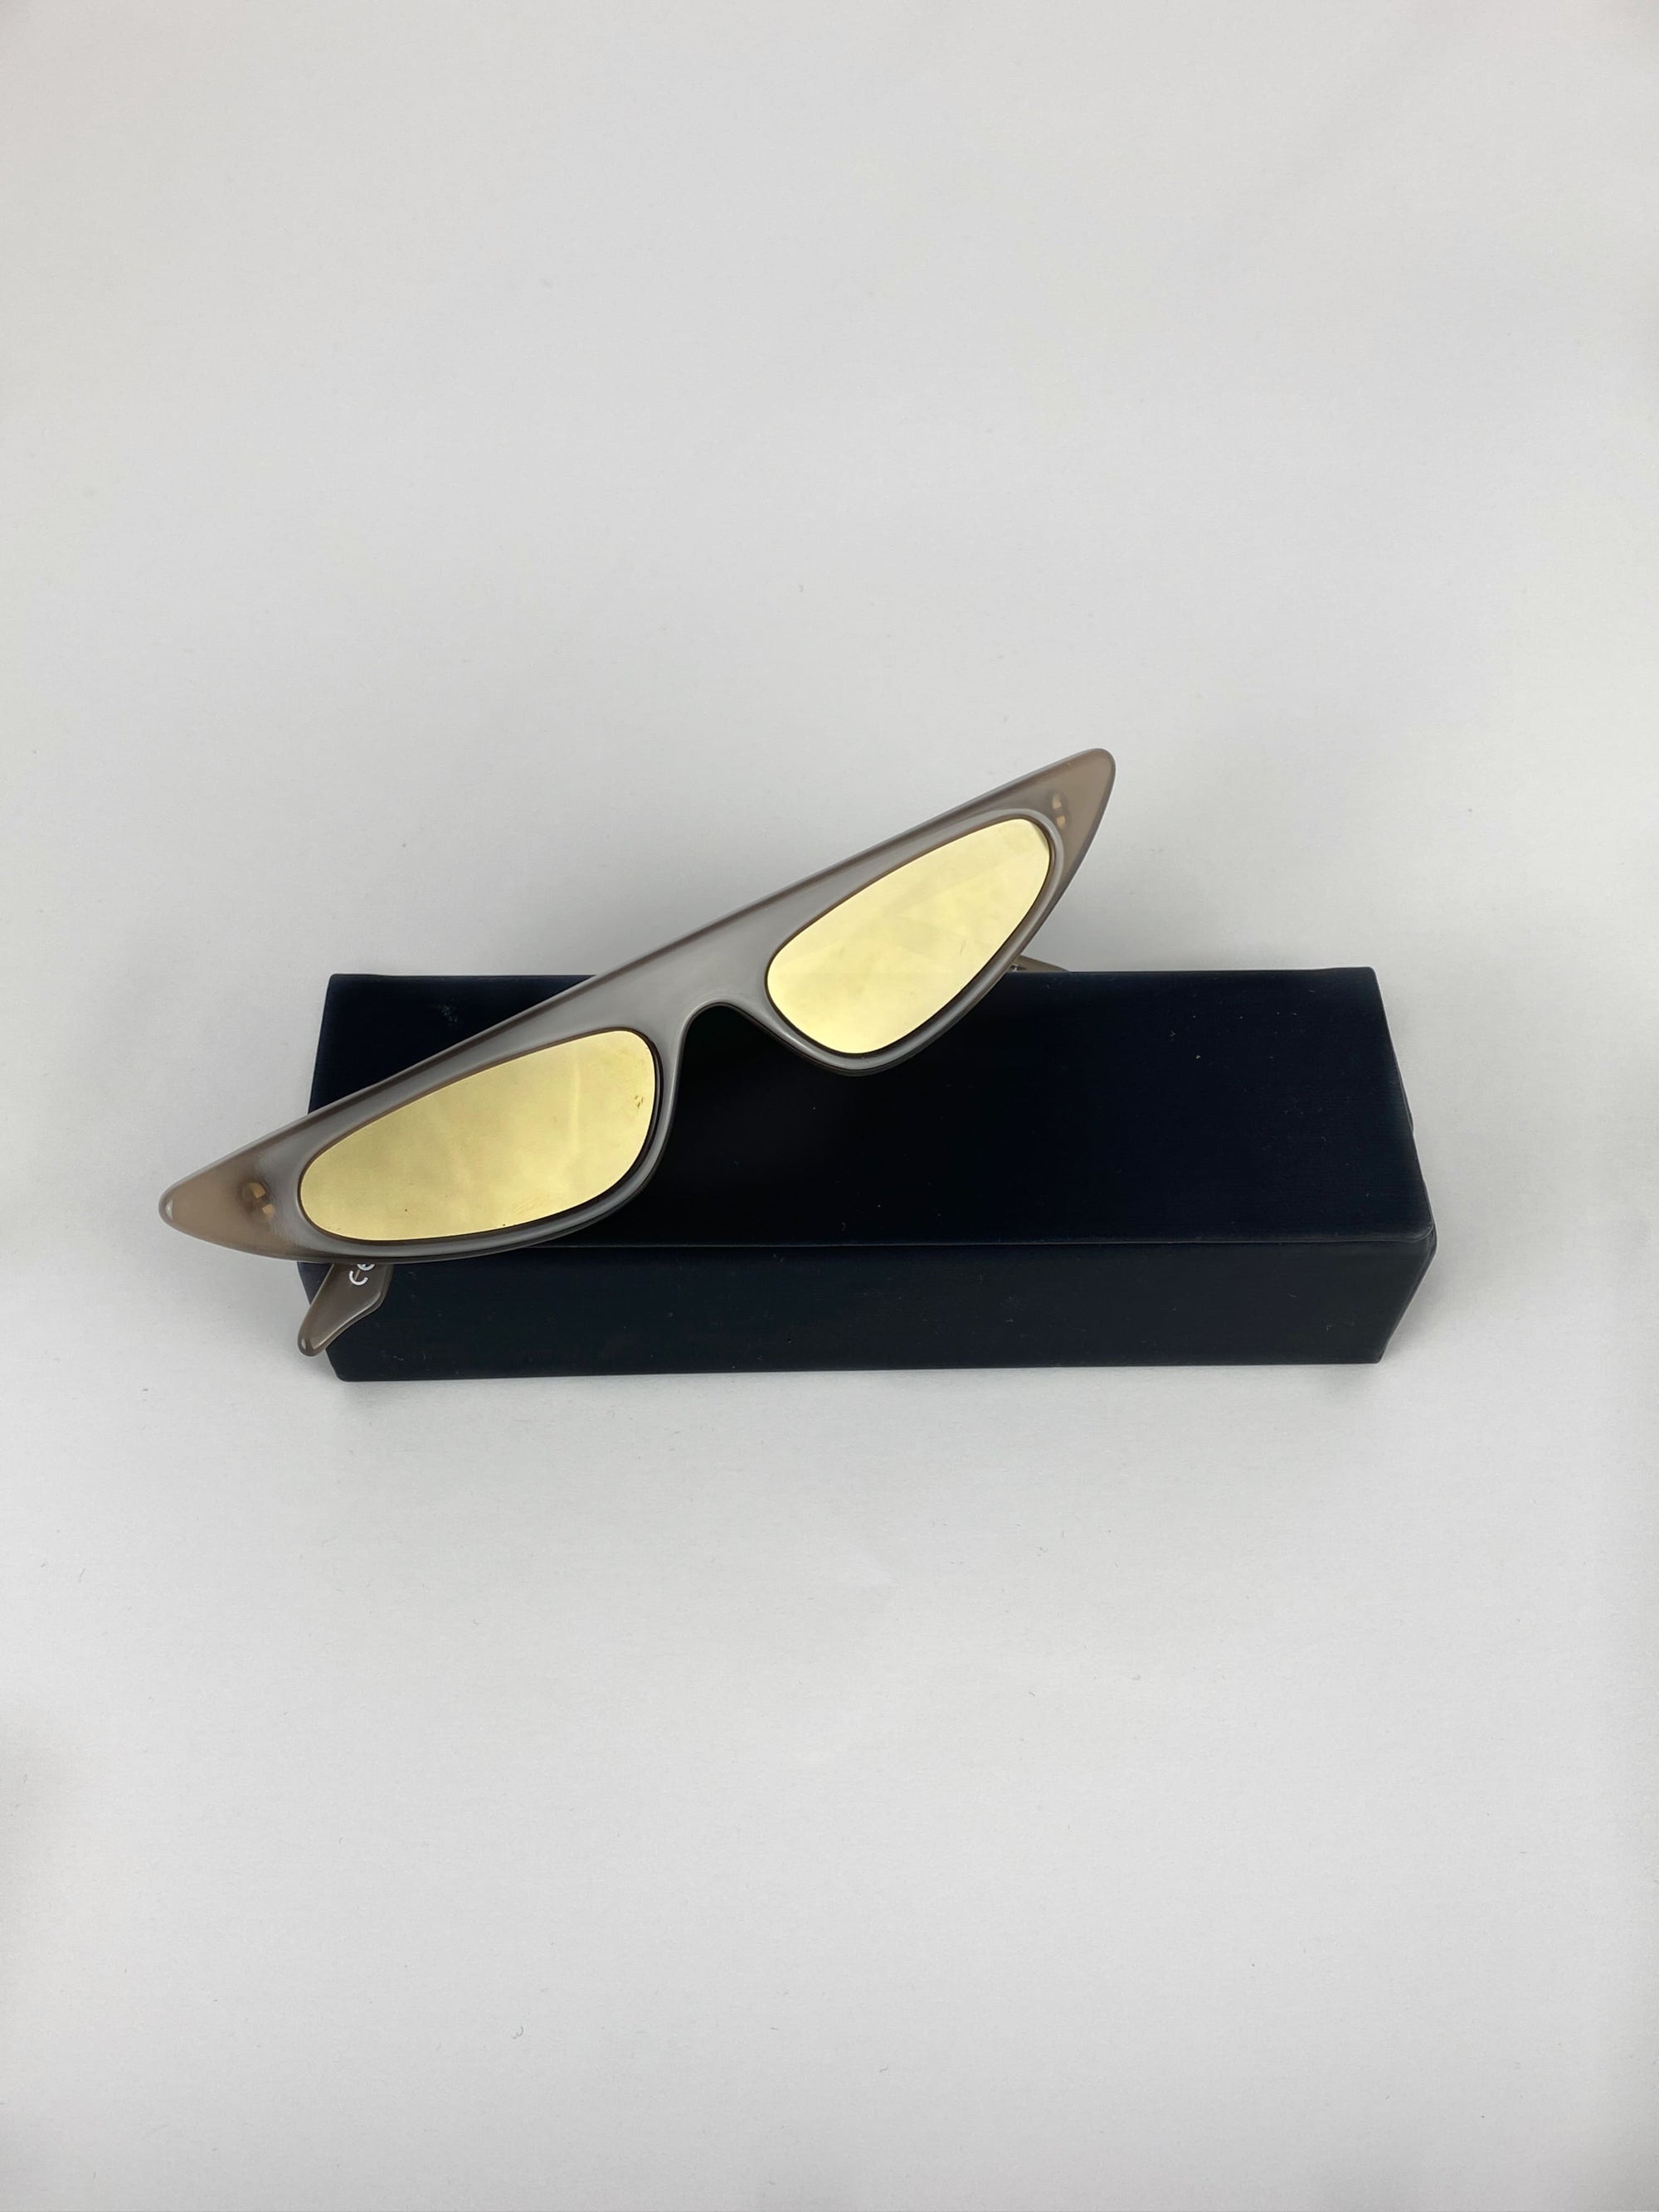 Produktbild der Andy Wole Sunglasses Florence Ash vor weißem Hintergrund.